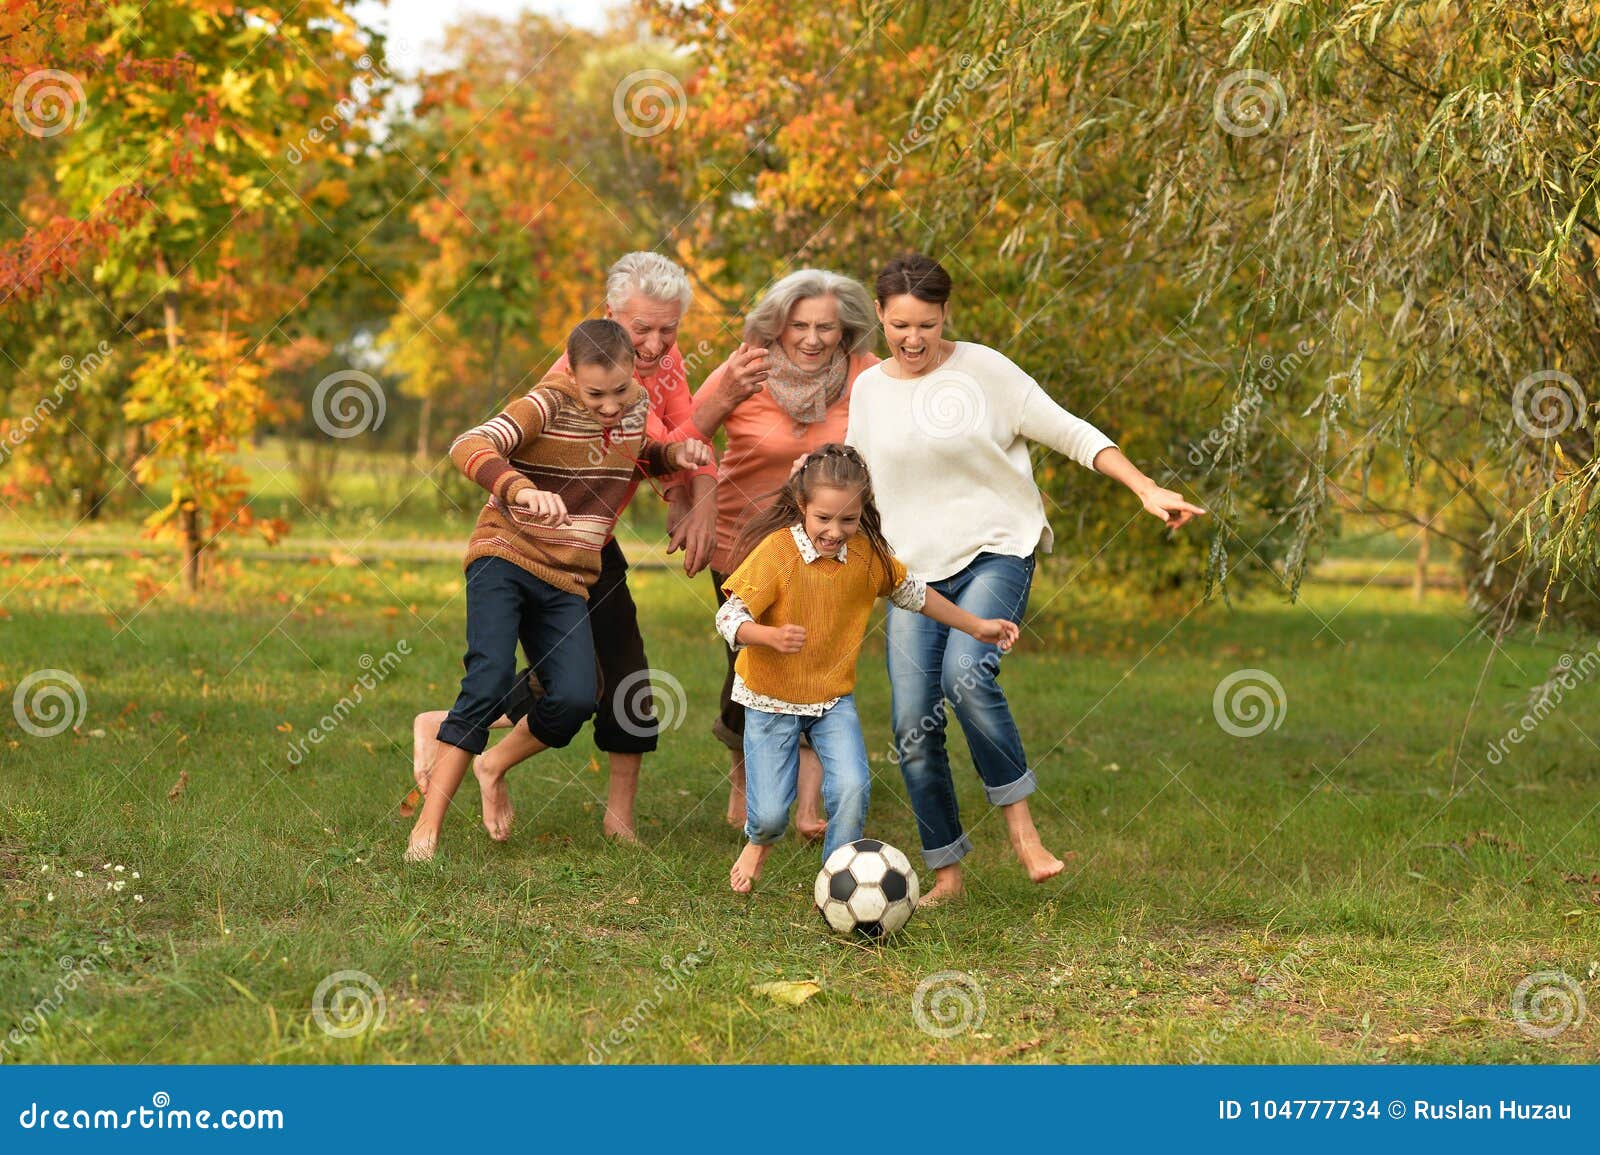 big family playing football